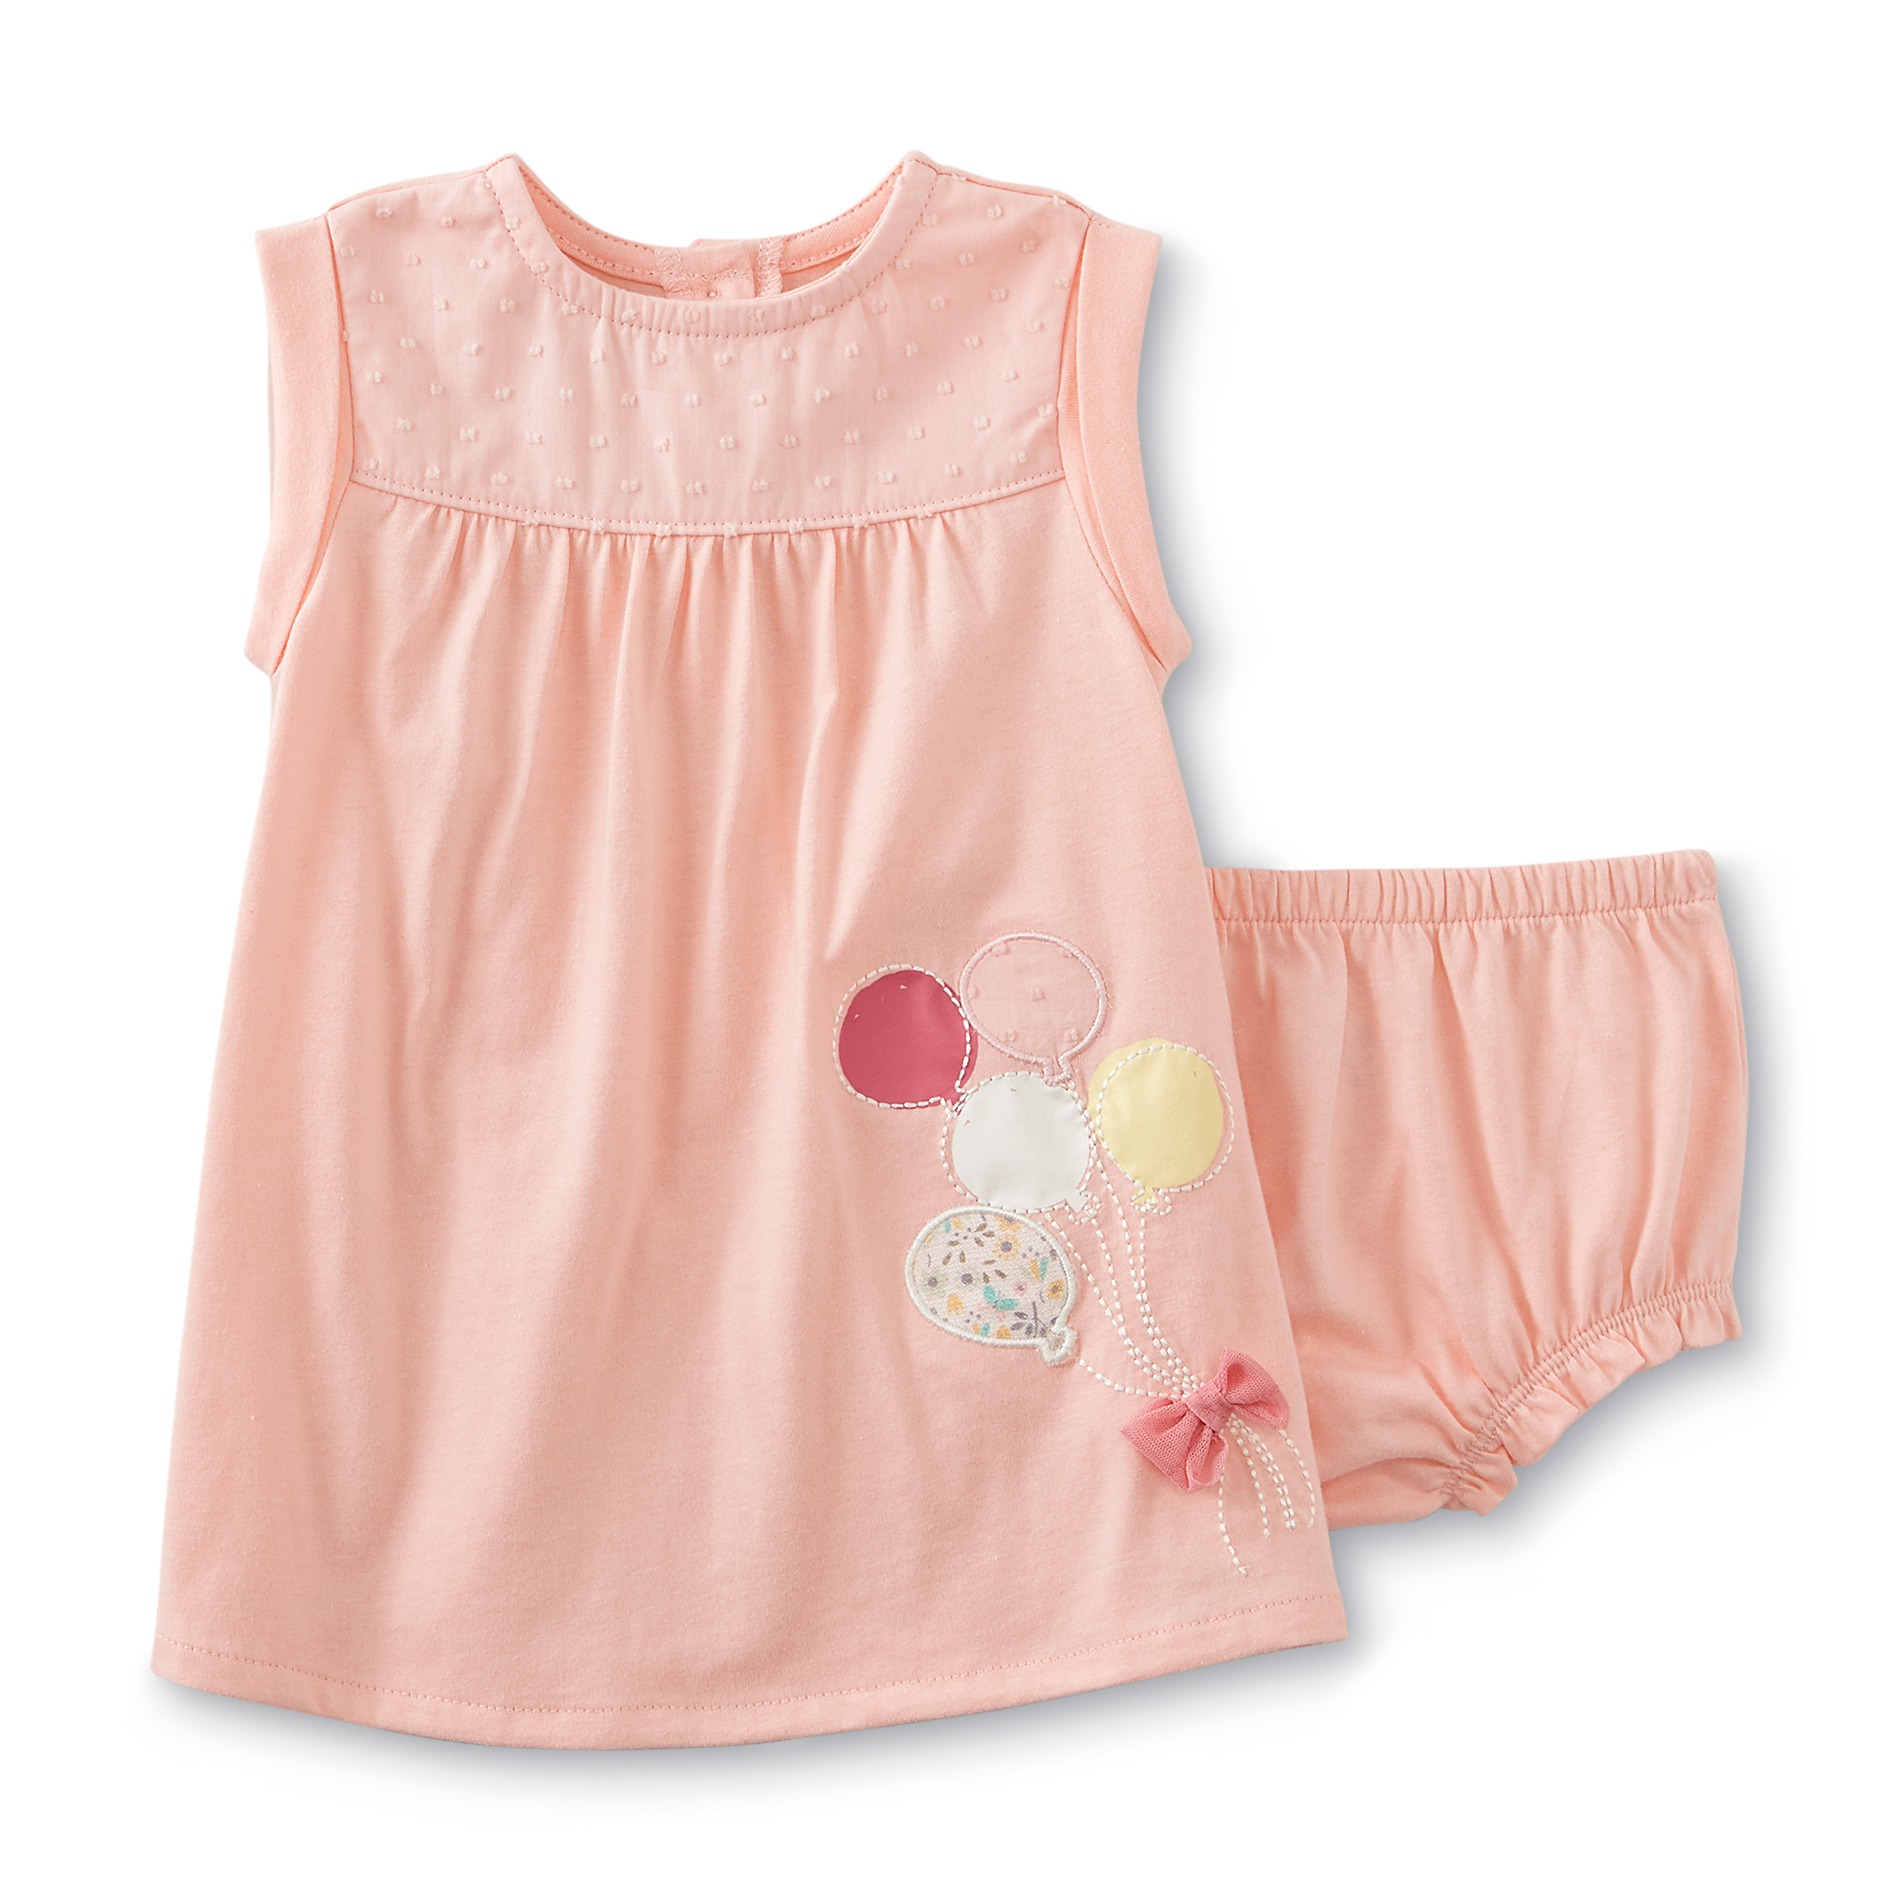 Little Wonders Newborn & Infant Girl's Dress & Diaper Cover - Balloons